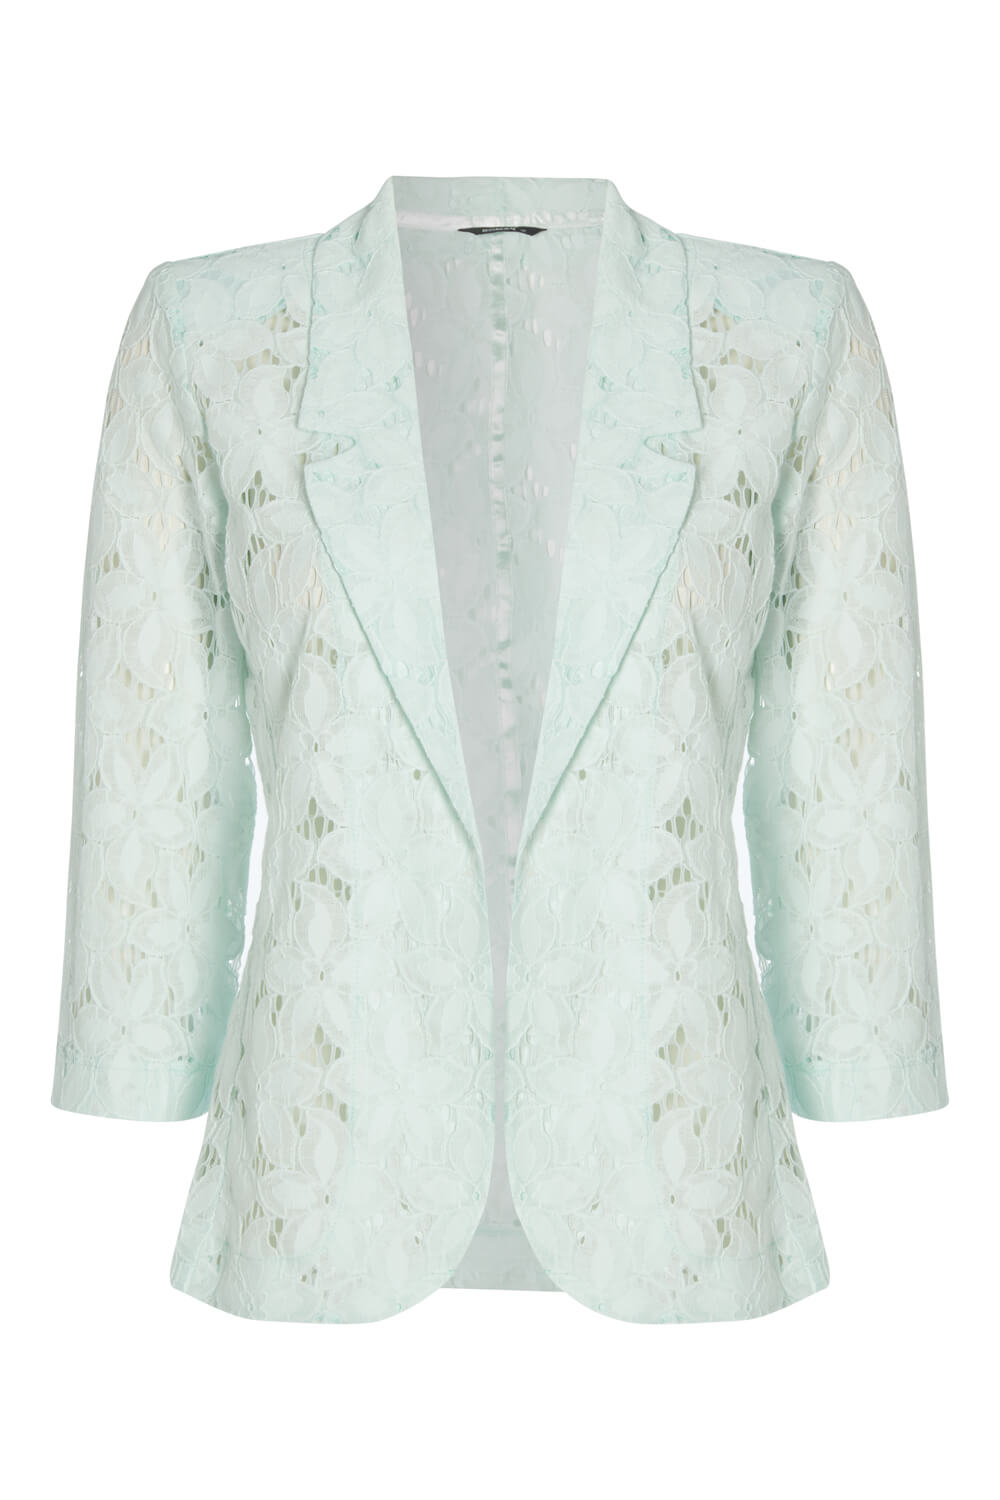 Floral Lace Jacket in Mint - Roman Originals UK